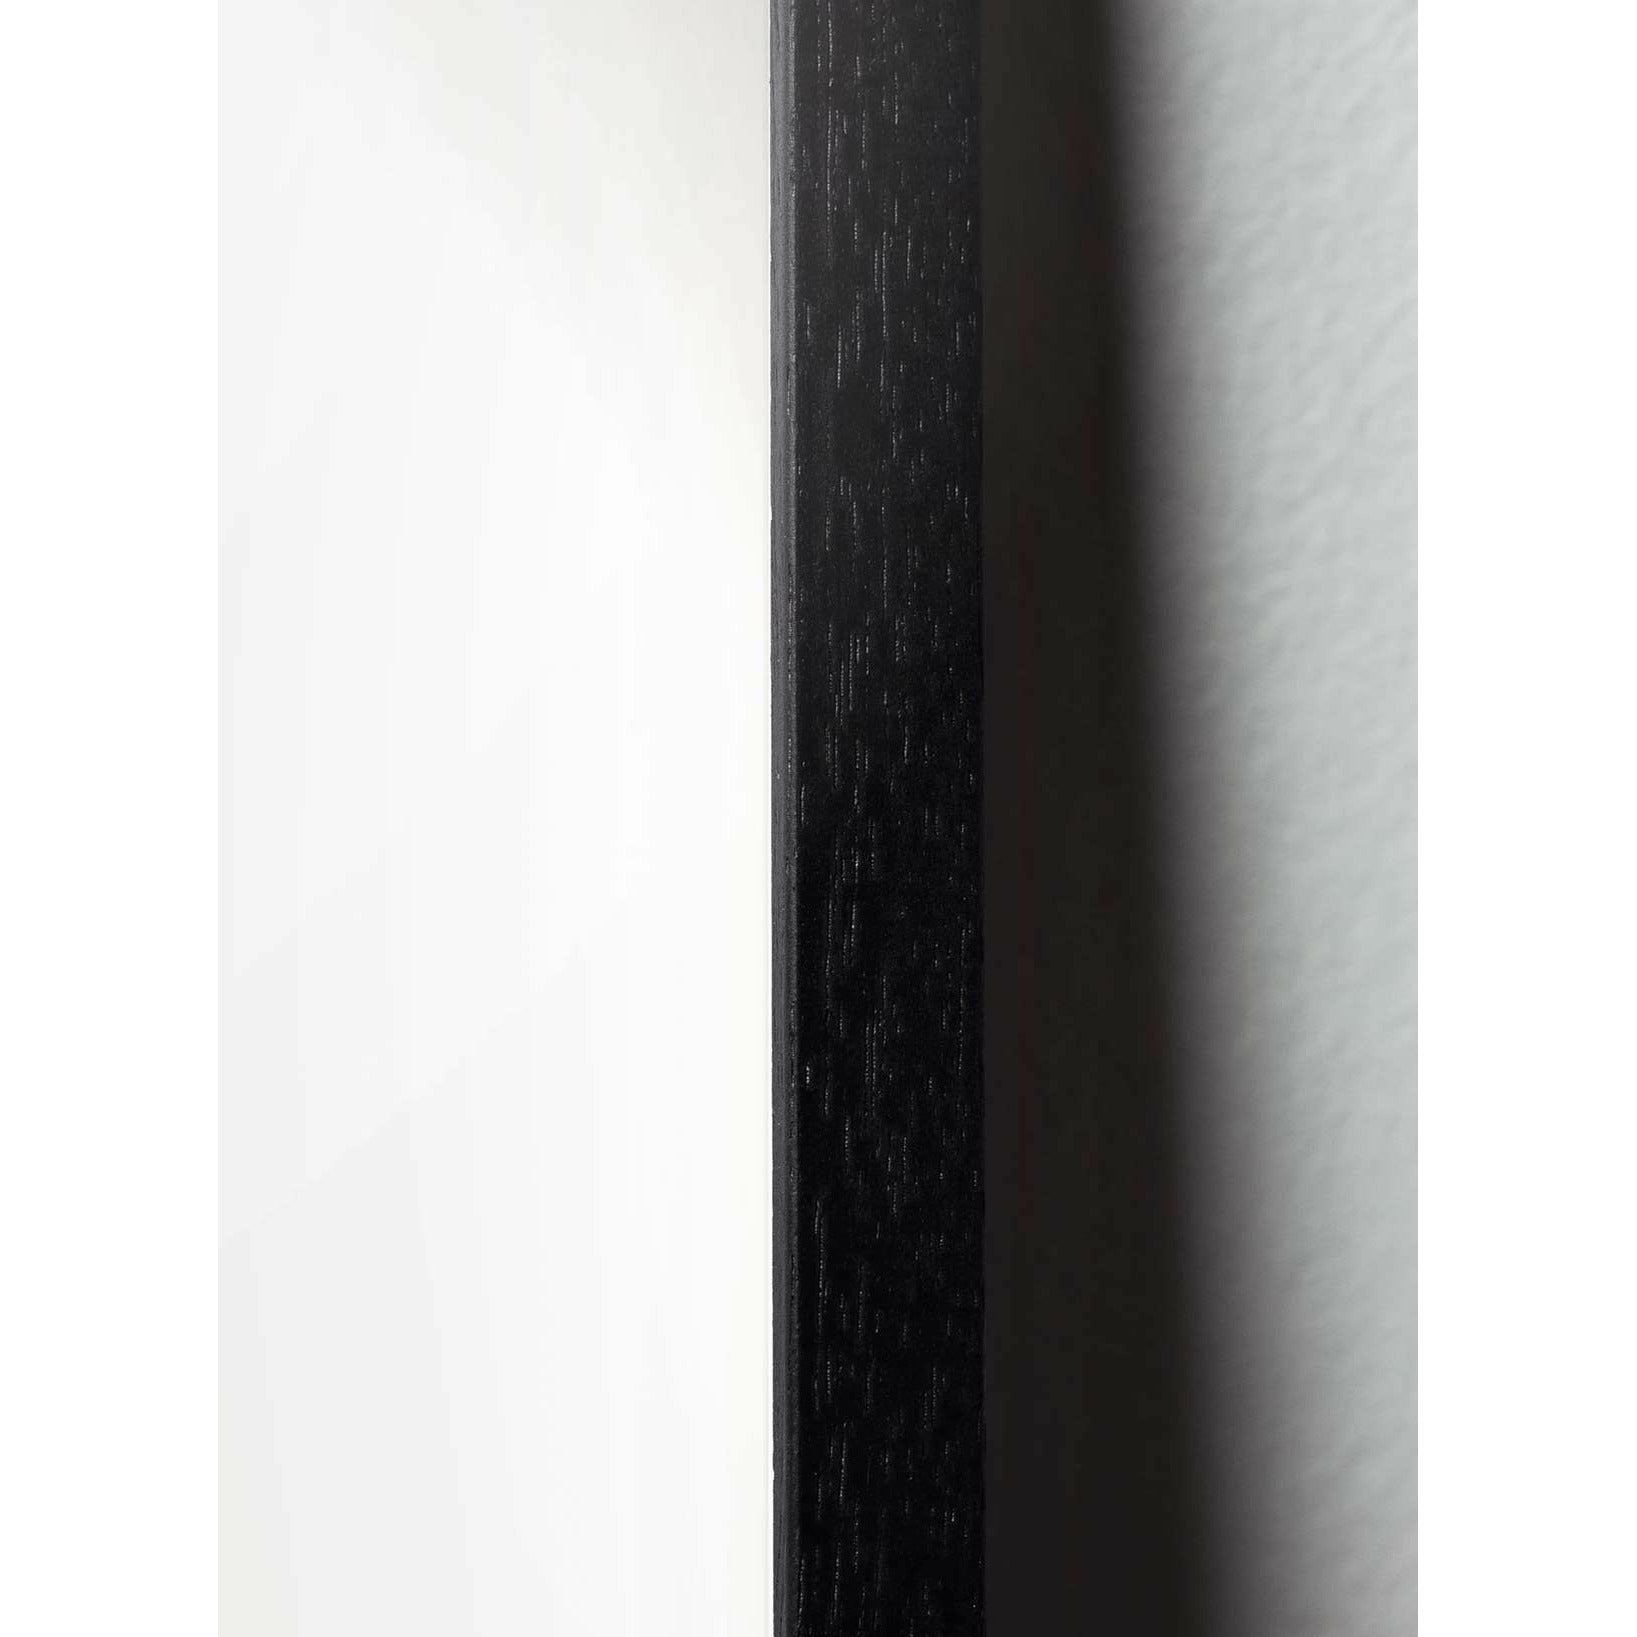 Brainchild Affiche de papeterie à œufs, cadre en bois laqué noir 50x70 cm, fond rose